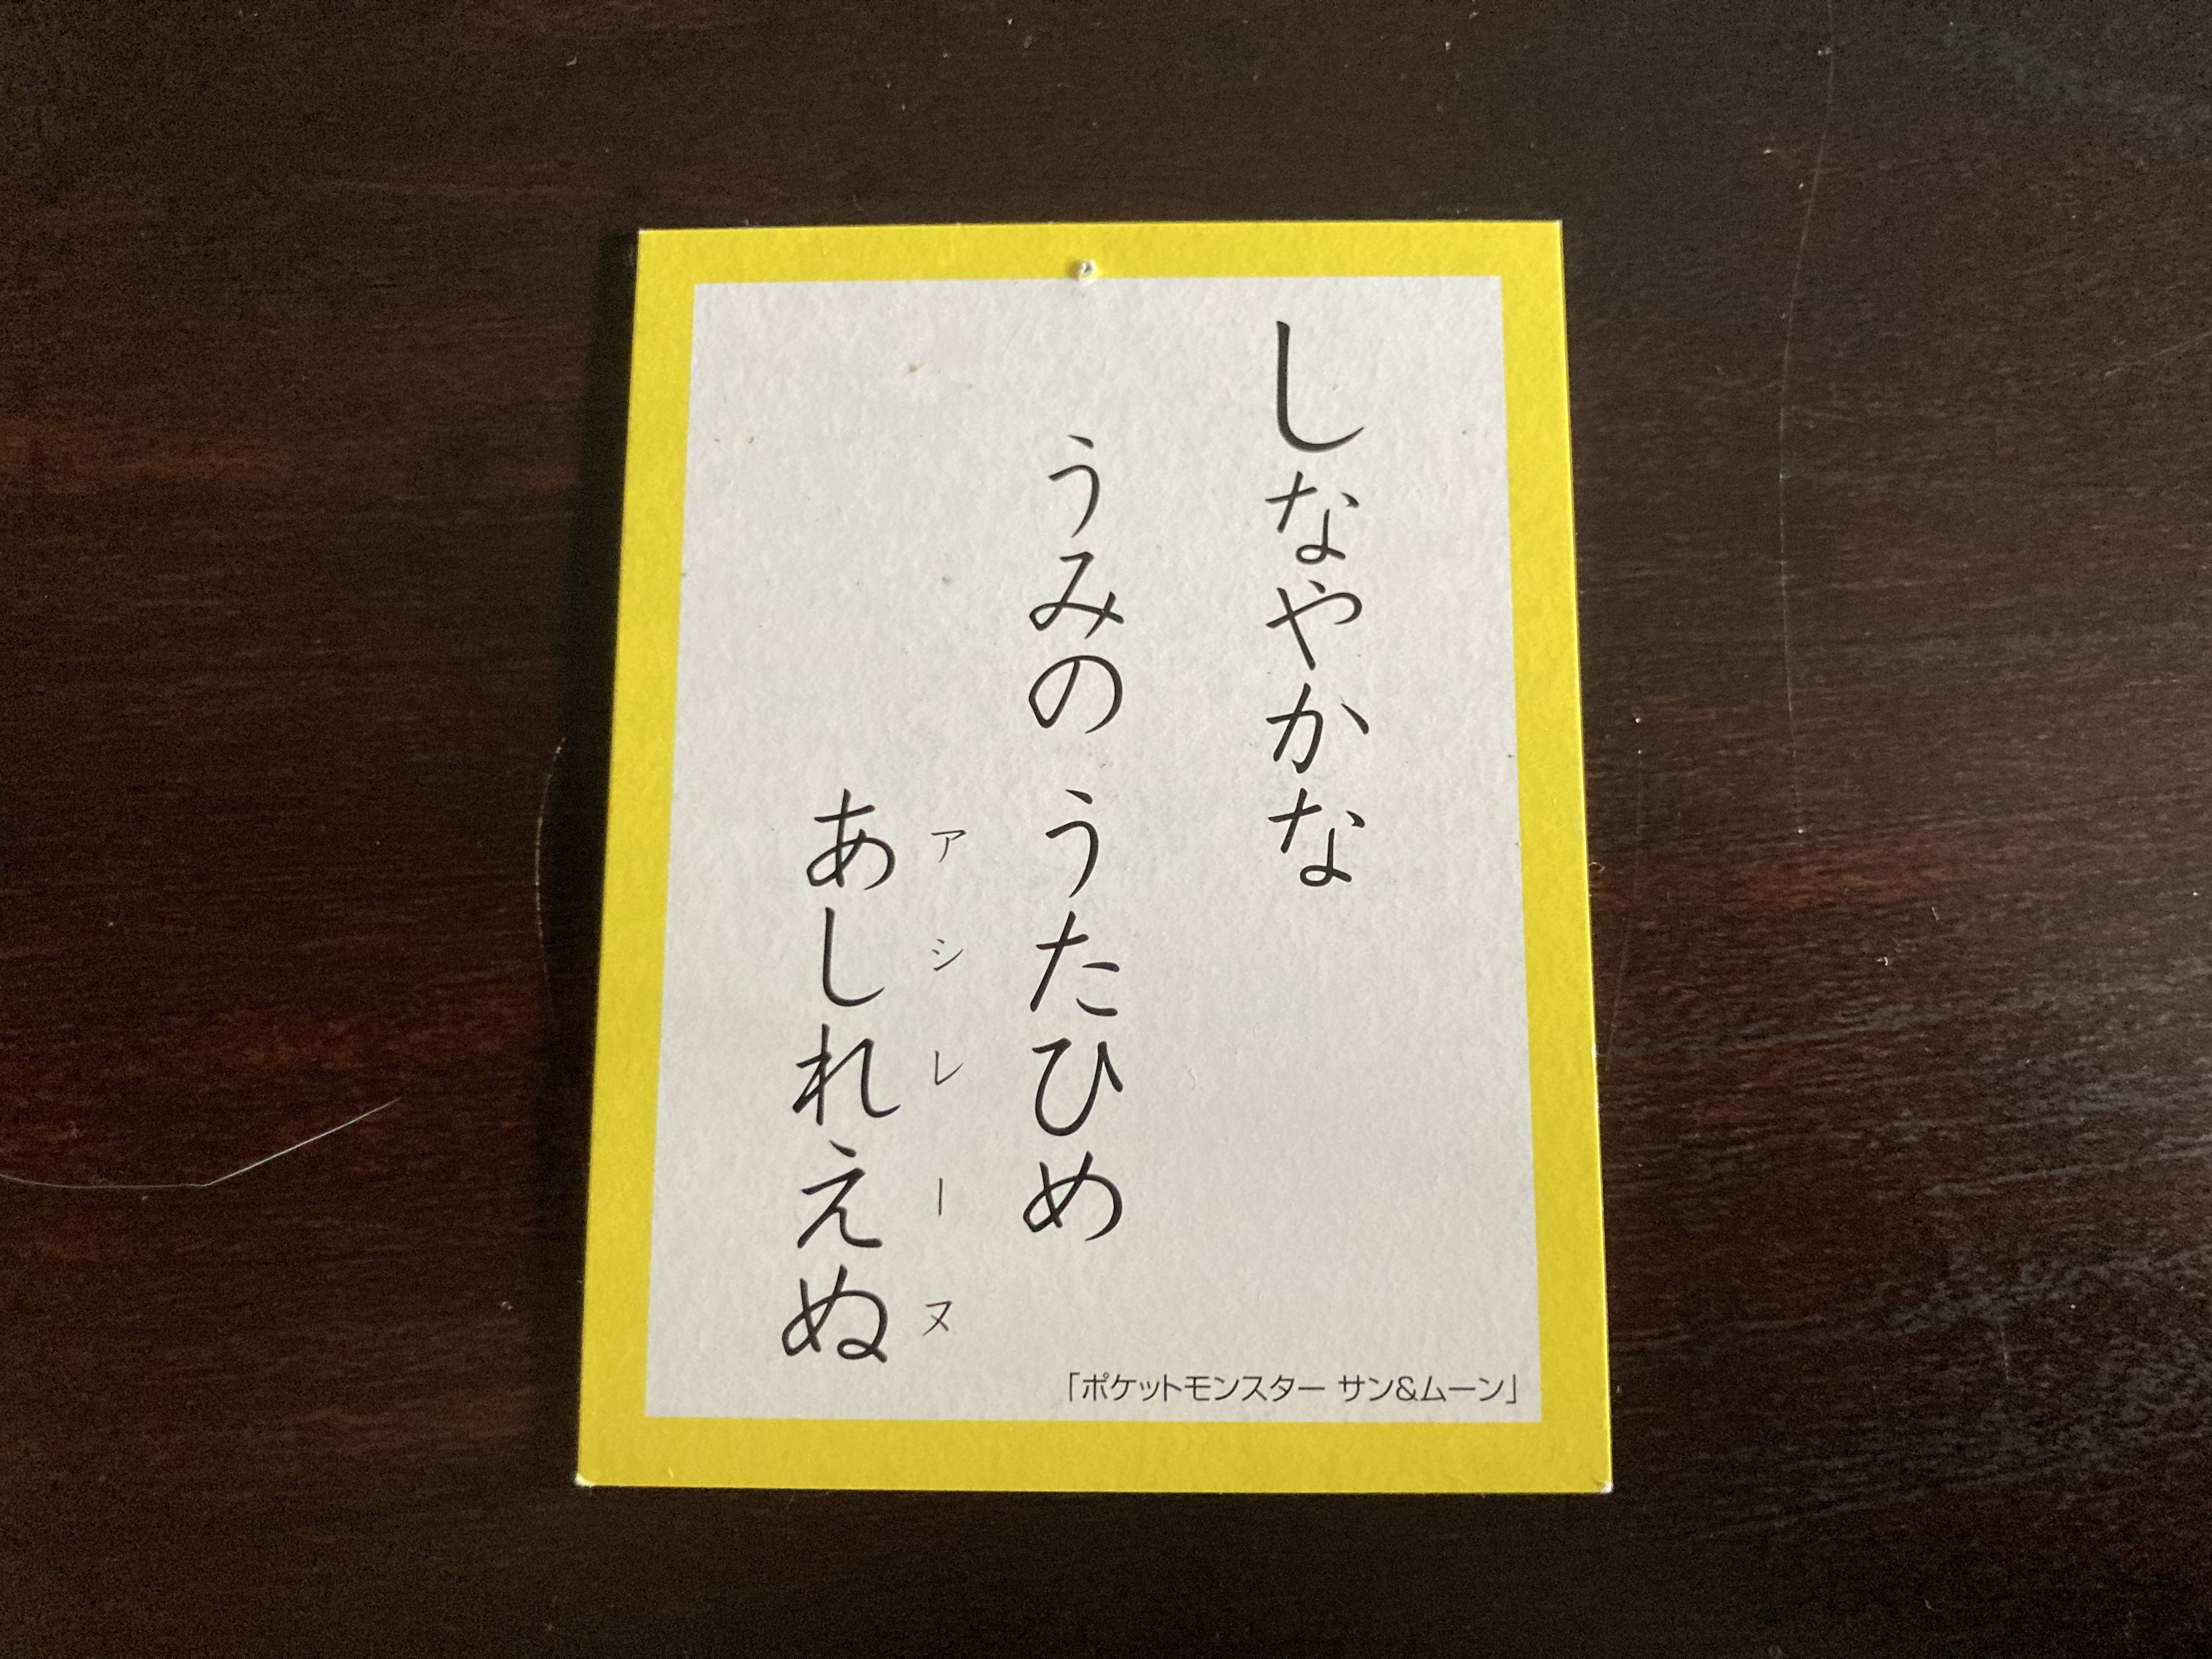 Primarina hiragana card